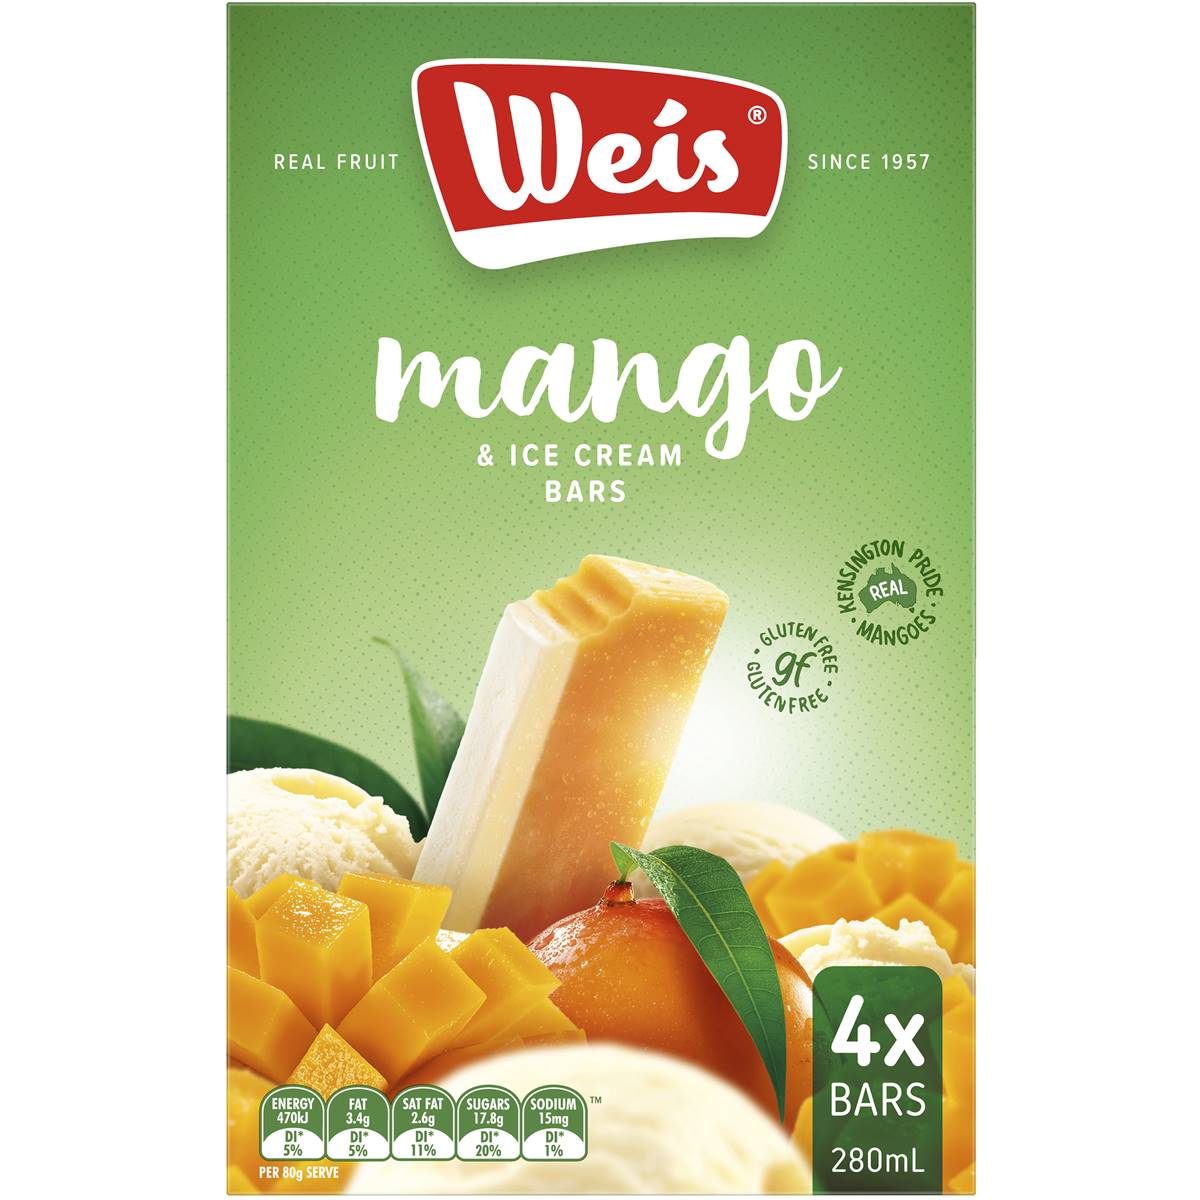 Calories in Weis Ice Cream Mango & Cream